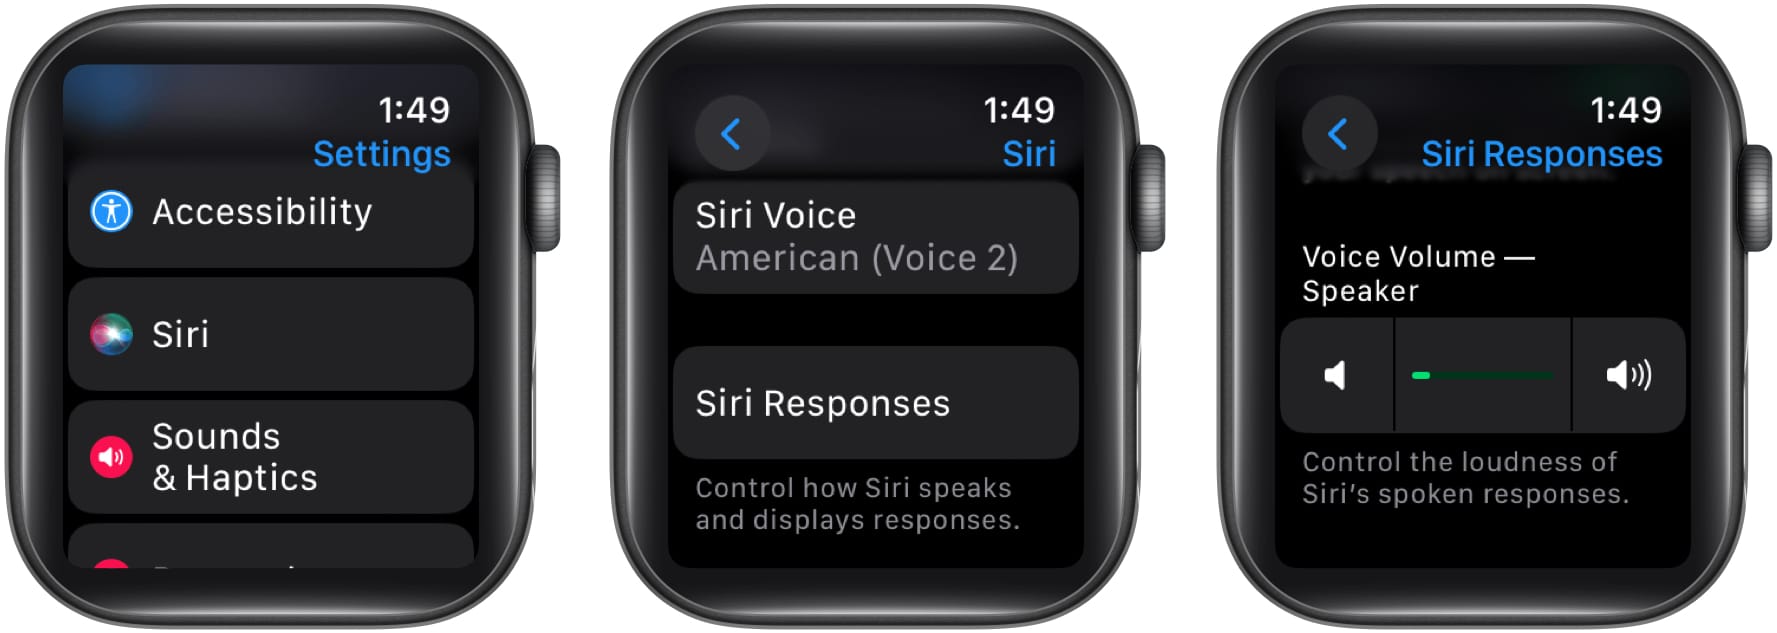 Pergi ke Siri, Pilih Siri Responses dan Laraskan pembesar suara volum Suara